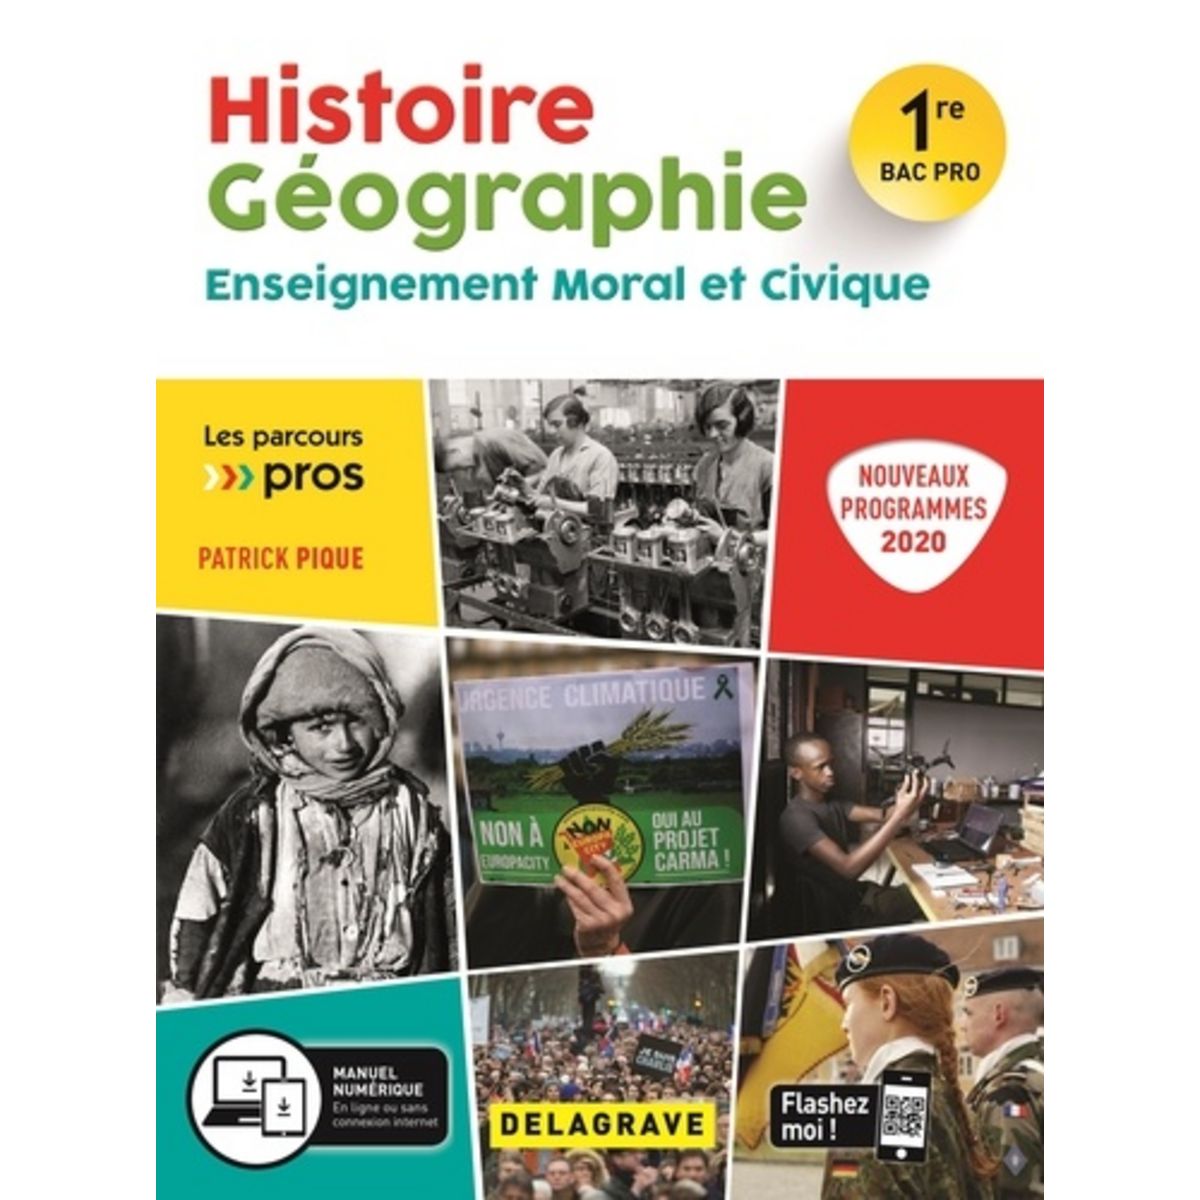 Histoire Geographie Enseignement Moral Et Civique 1re Bac Pro Edition 2020 Pique Patrick Pas 1037